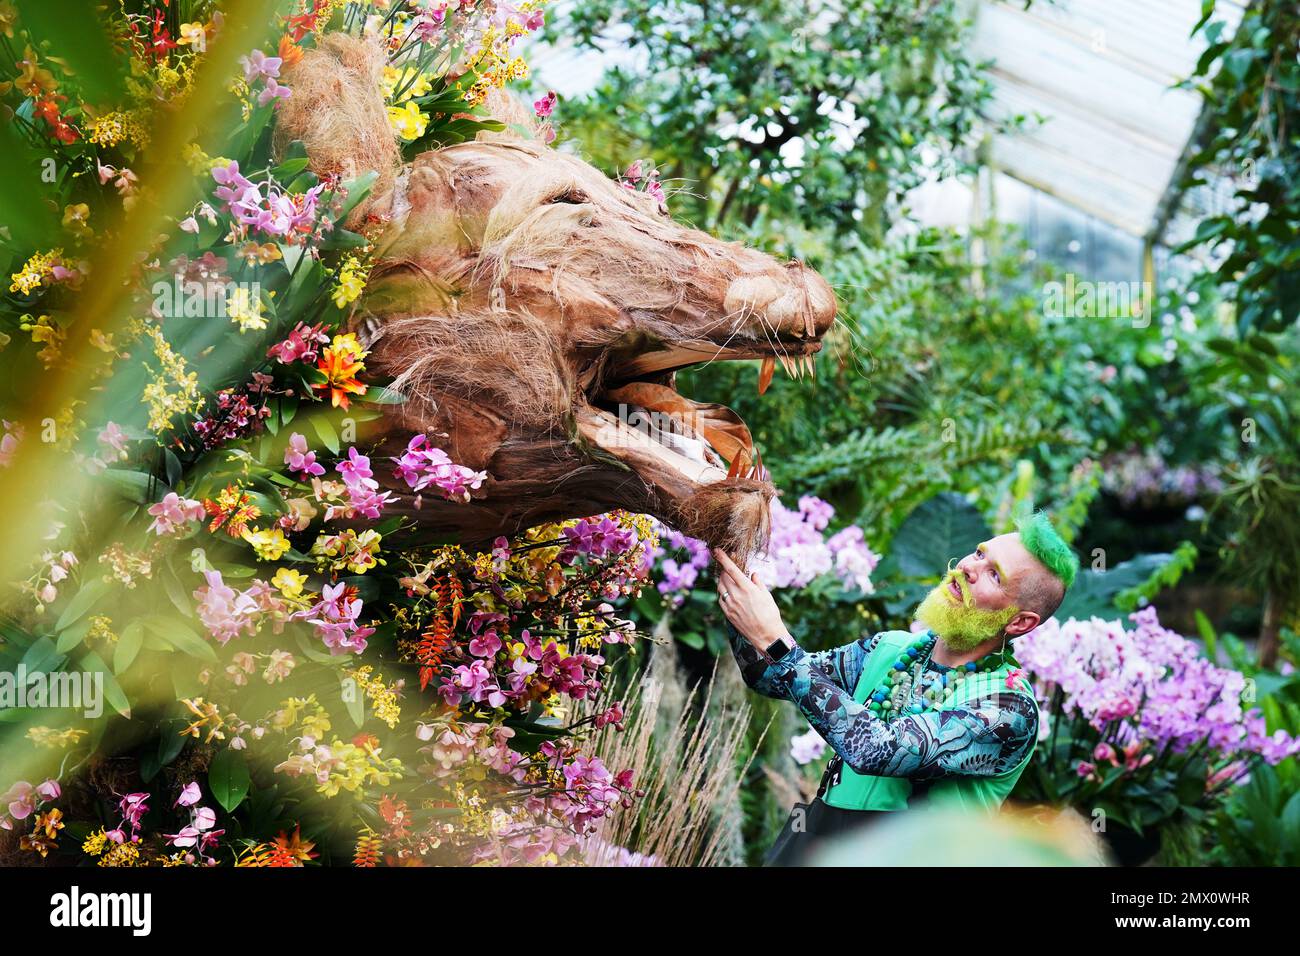 L'orticoltore Kew Henrick Röling partecipa a una mostra ispirata al leone al Festival delle orchidee a tema Camerun, all'interno del Conservatorio Princess of Wales presso i Royal Botanic Gardens di Kew, nella zona ovest di Londra. Data immagine: Giovedì 2 febbraio 2023. Foto Stock